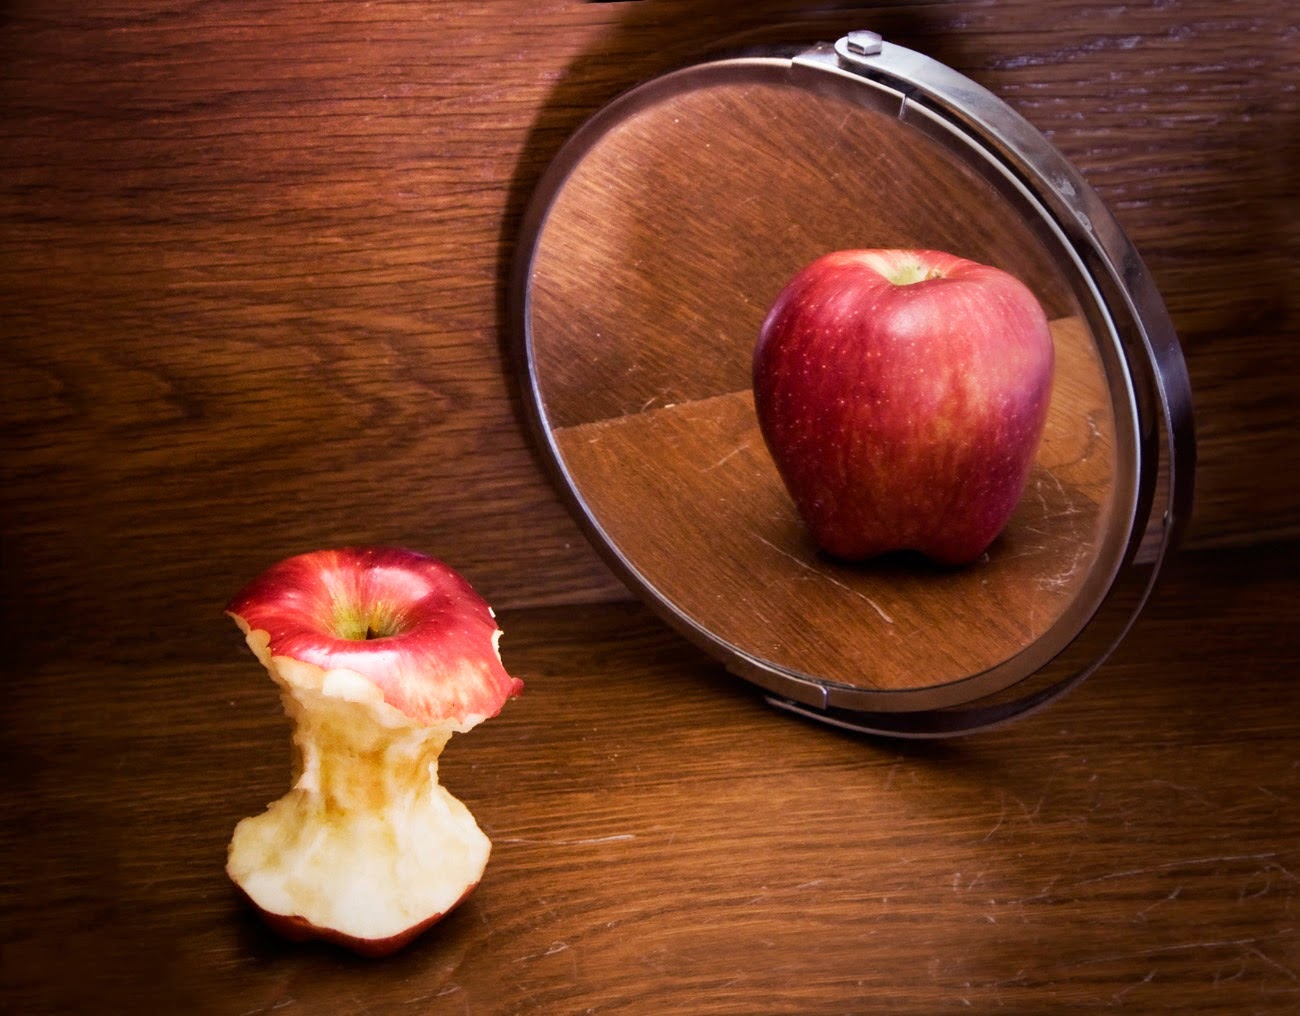 Autossustentável: O que você vê no espelho?